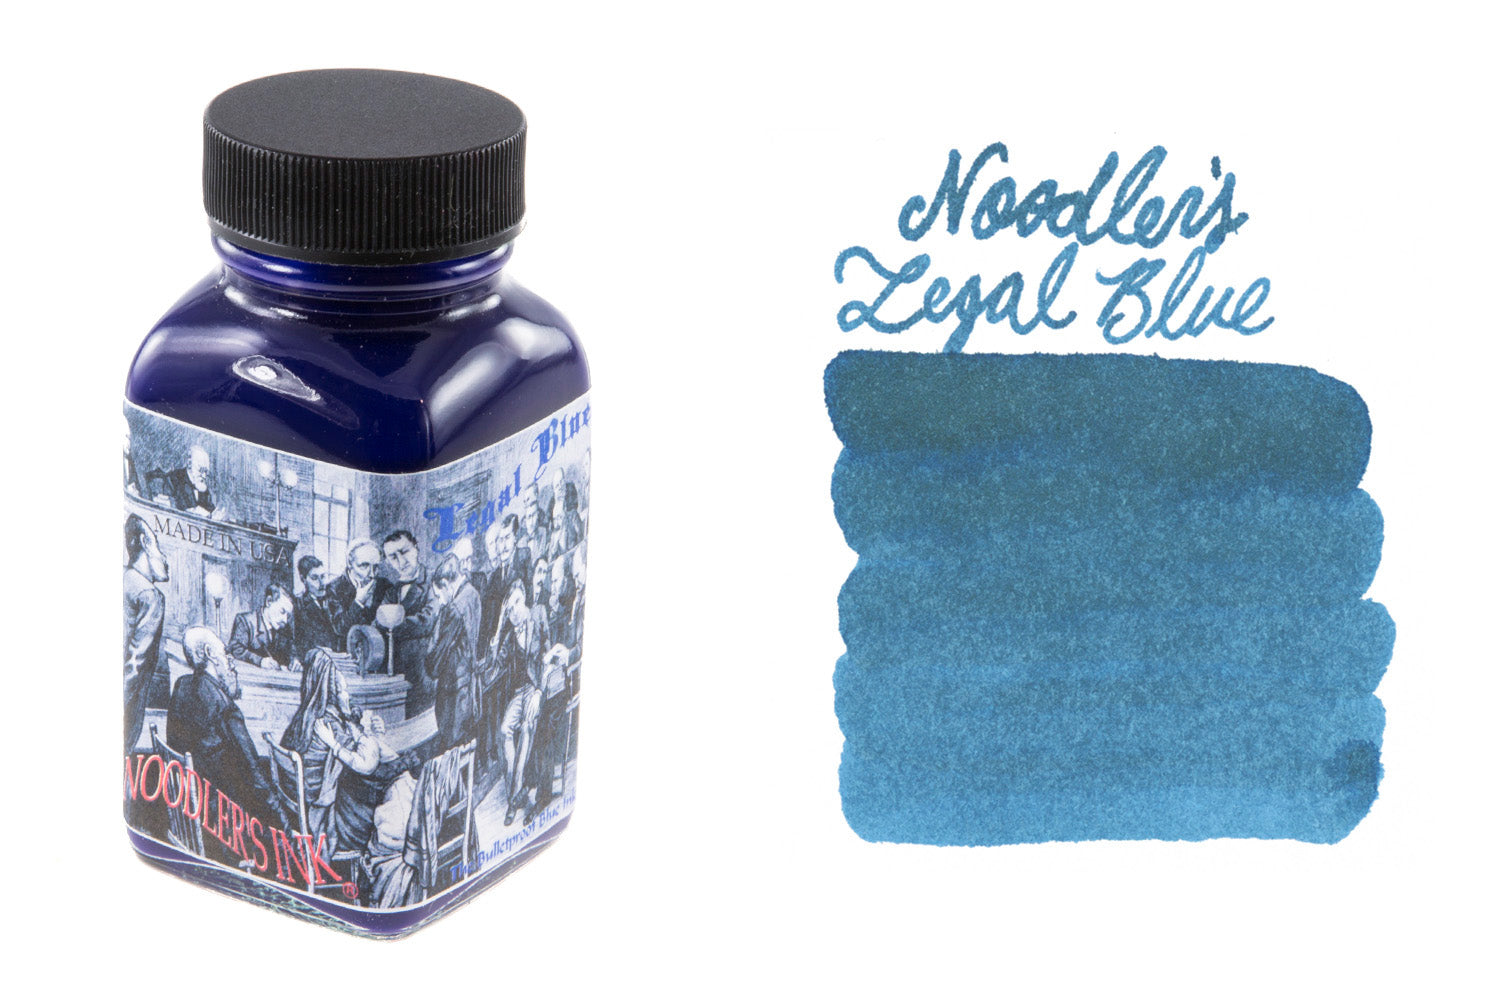 Noodler's Ink Legal Blue - 3 oz Bottled Ink – Lemur Ink